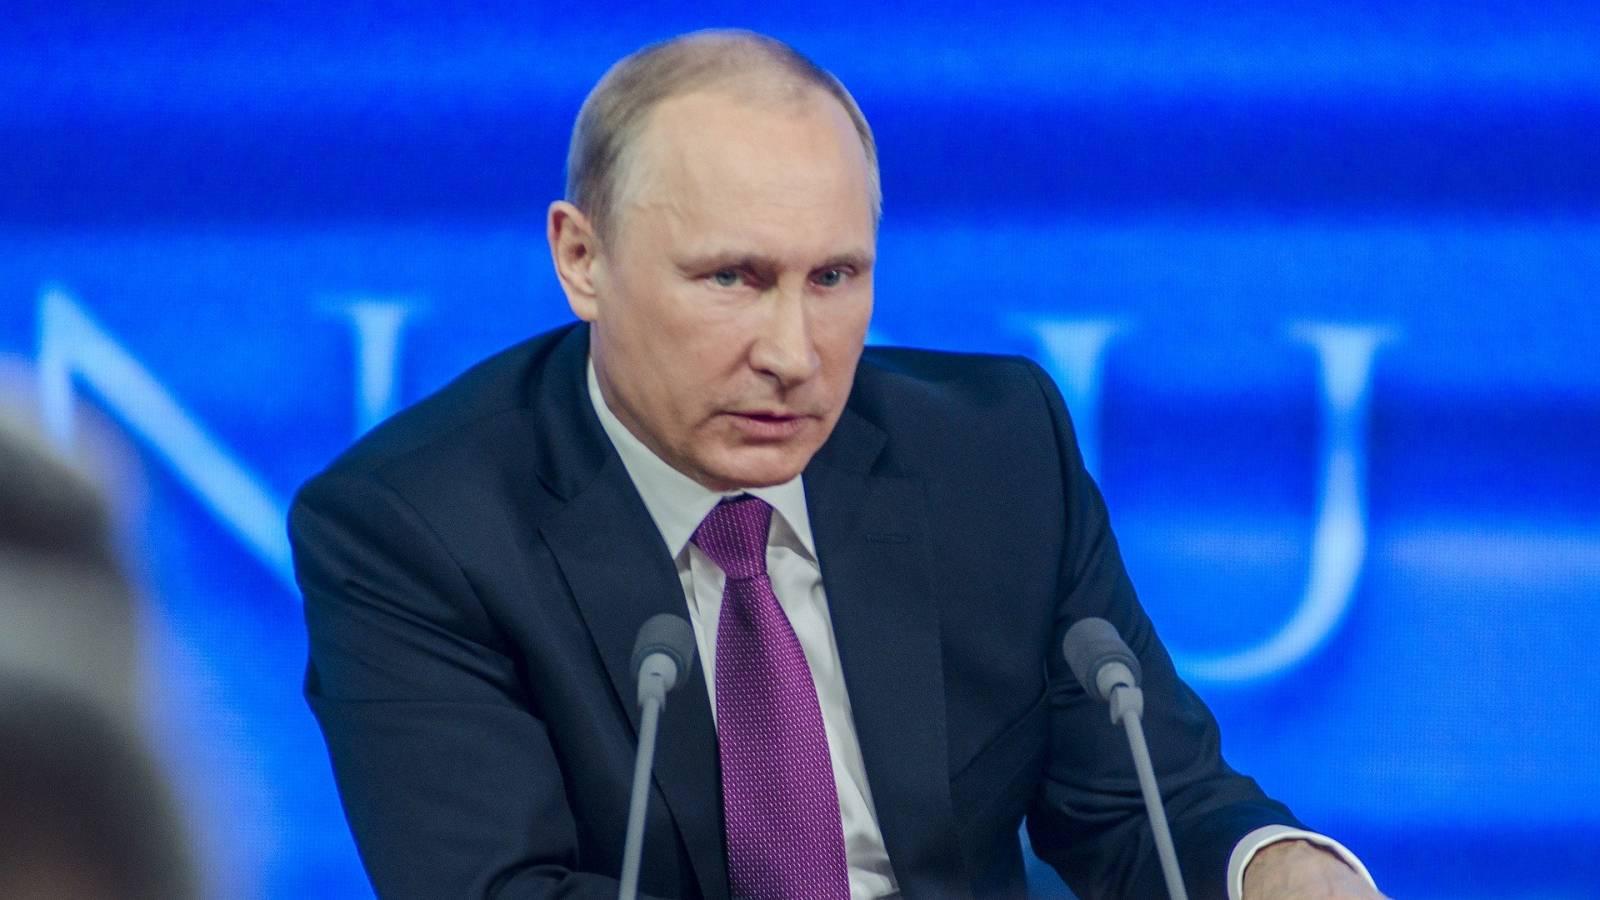 Vladimir Poetin beweert dat Oekraïne tijdens de oorlog meer soldaten heeft verloren dan Rusland